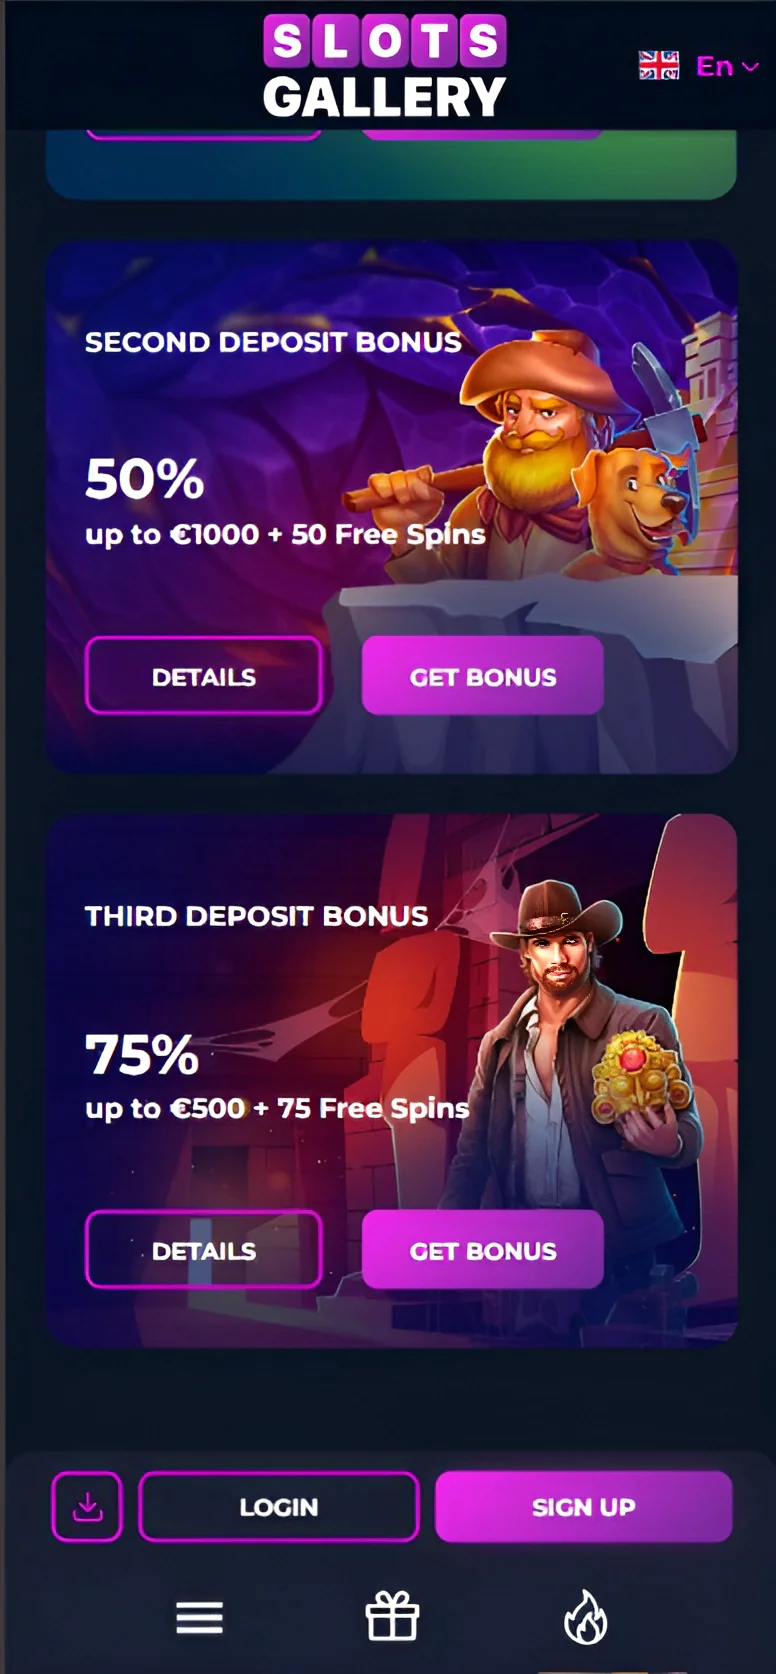 Bonus offers in the Mobile App - Slots Gallery